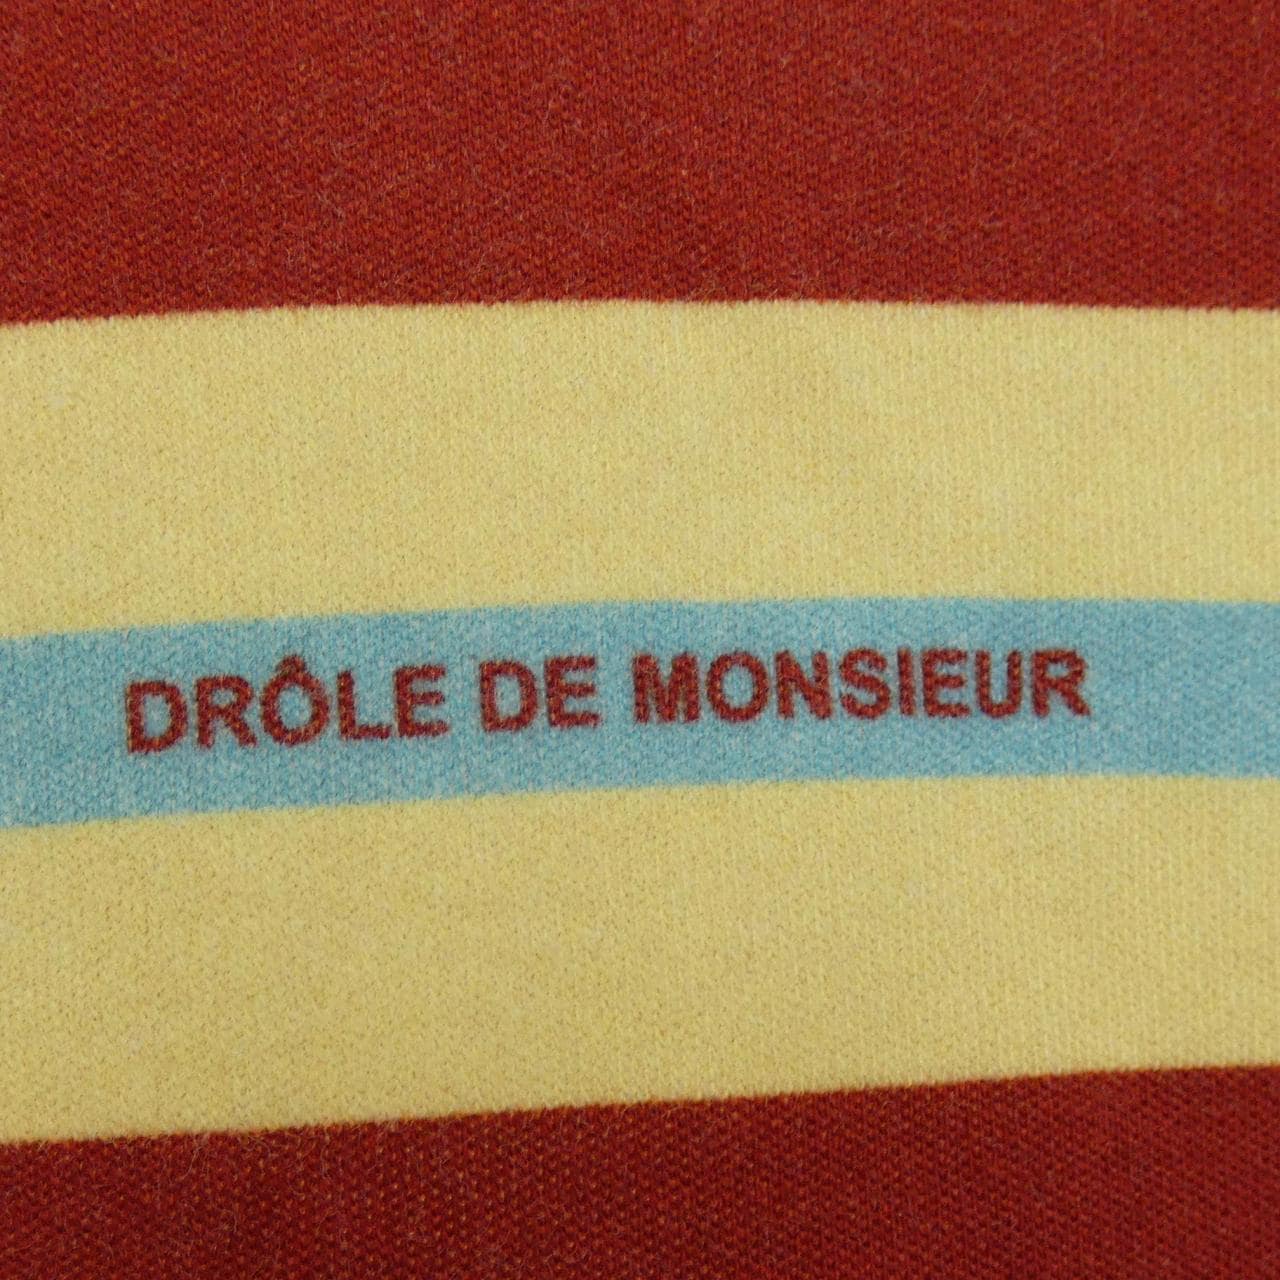 ドロールドムッシュ DROLE DE MONSIEUR Tシャツ